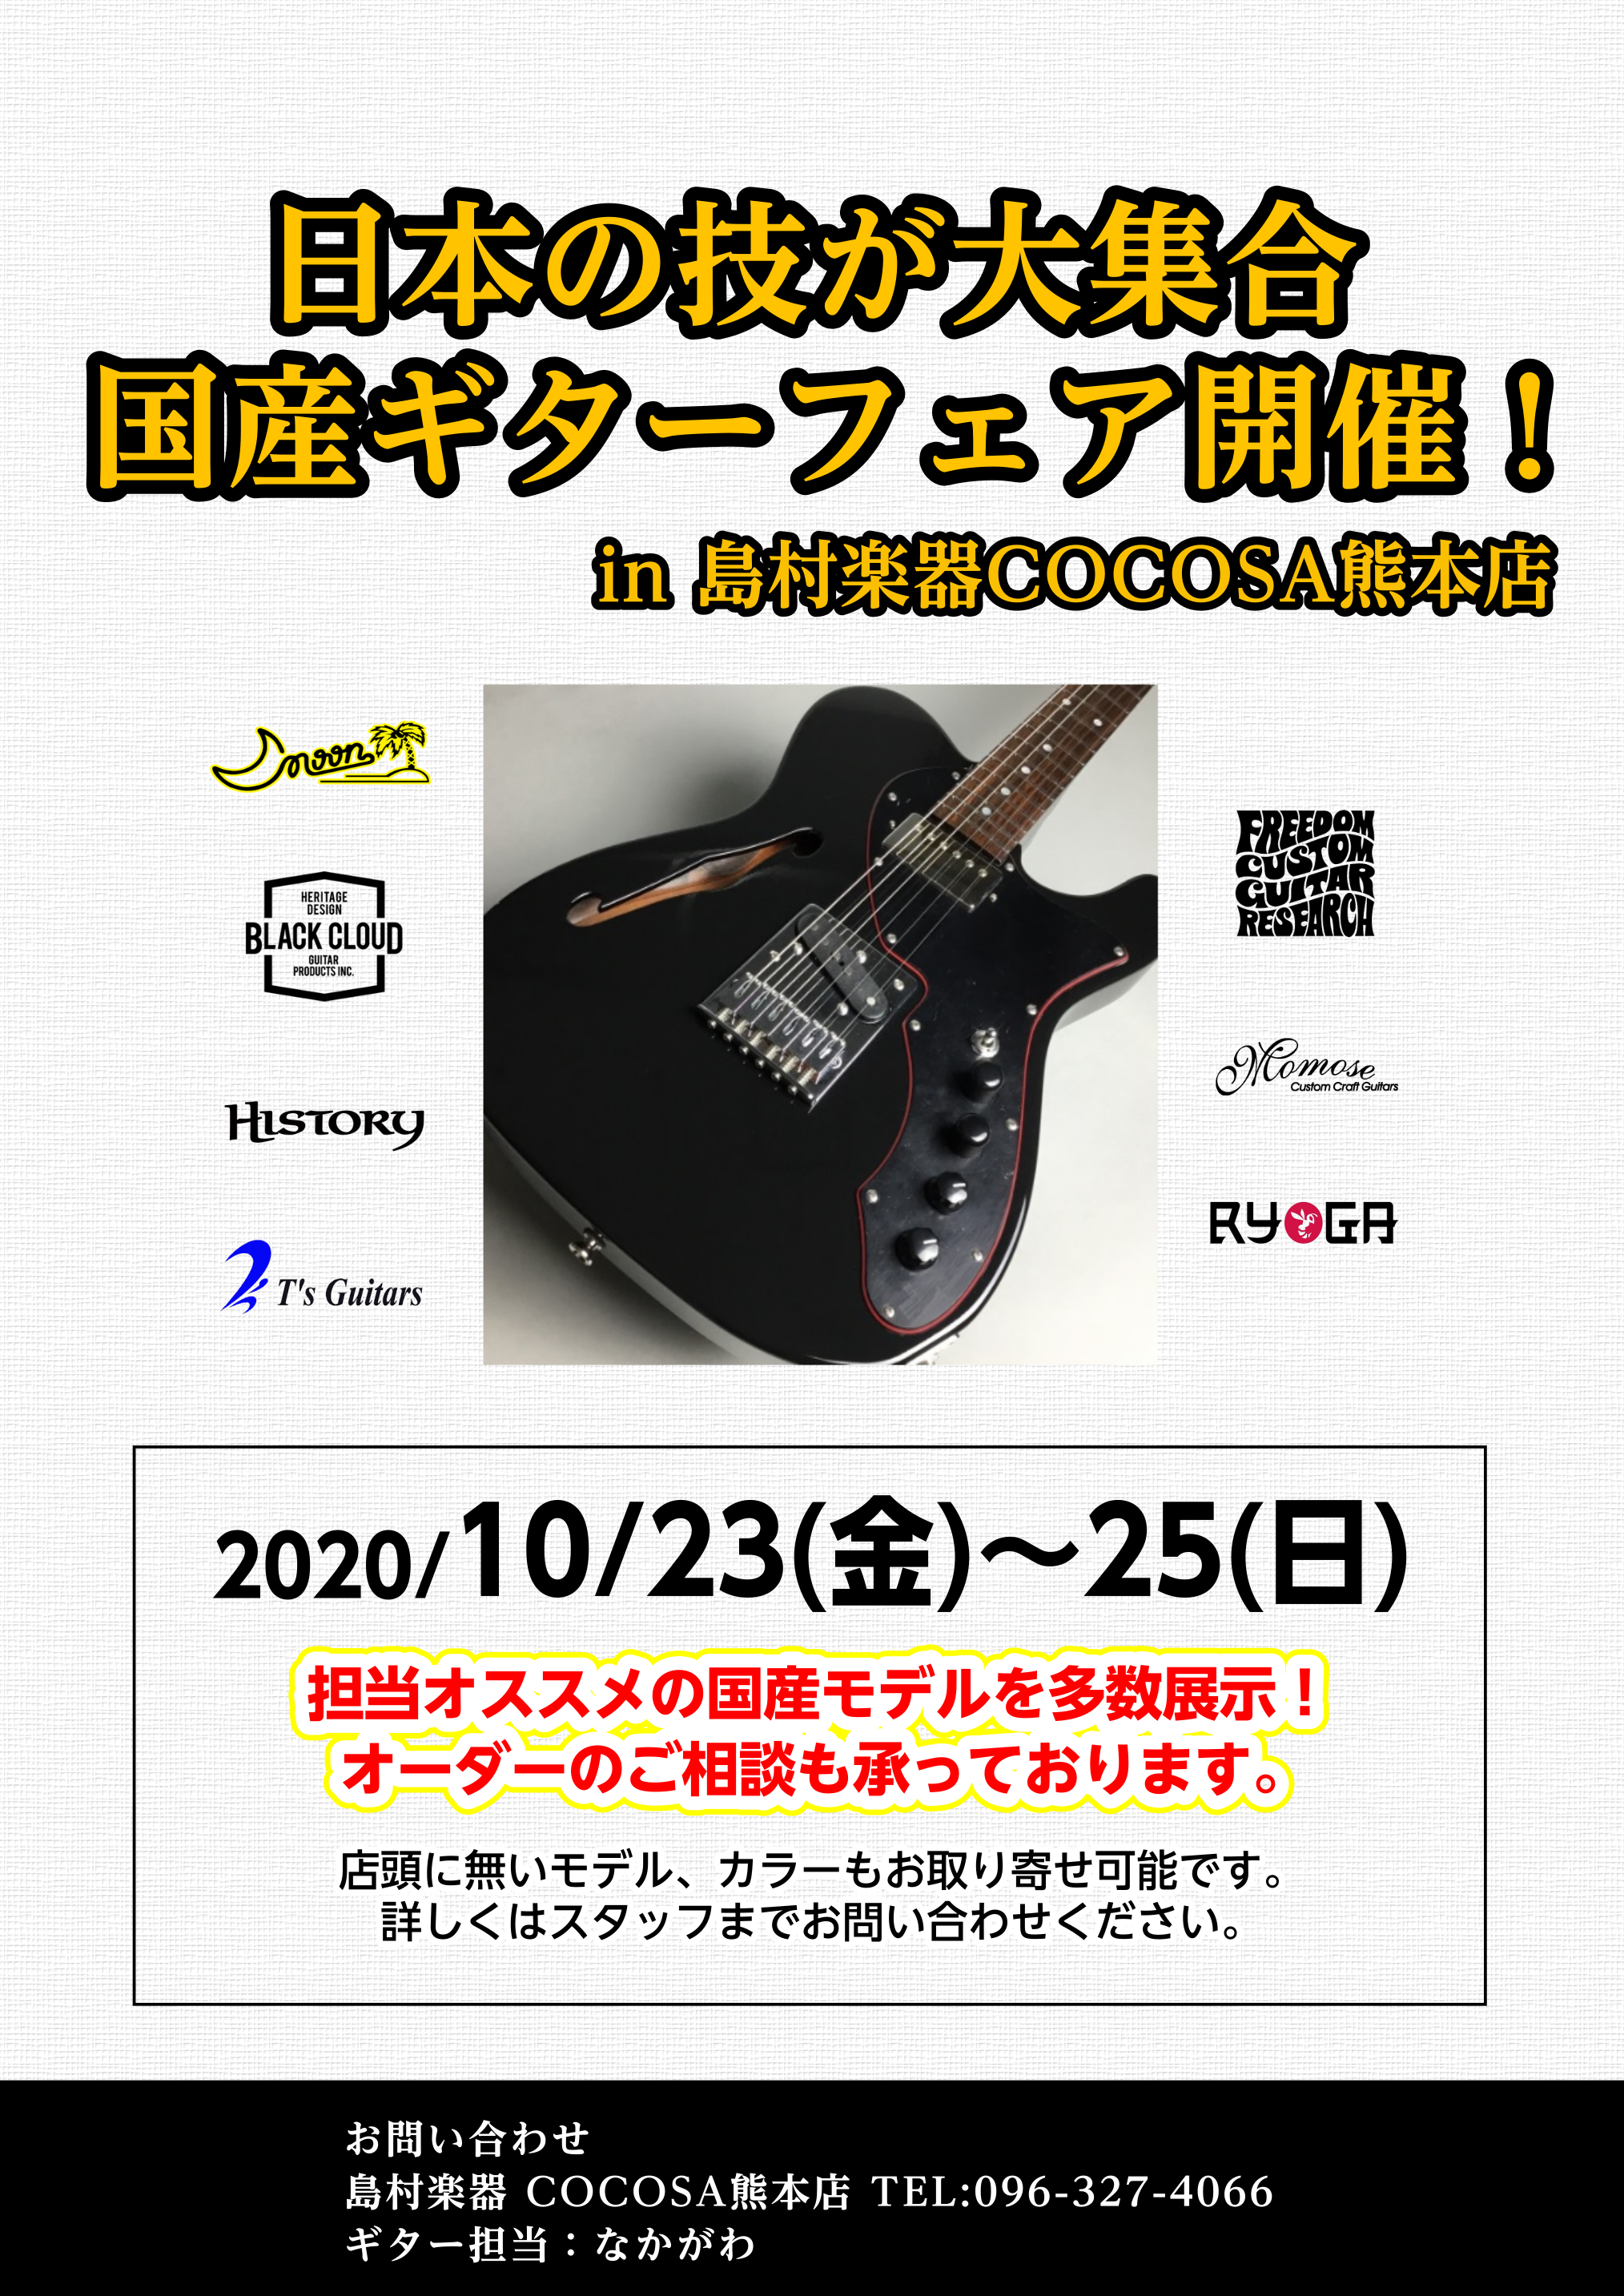 *10/23（金）～国産エレキギターフェア開催　熊本ココサ店 記載のブランドが集合します、是非ご来店お待ちしております。 その他、エレキギター、エレキベースのオーダー、取り寄せも承っております。 *お問い合わせ |*店舗名|島村楽器　COCOSA熊本店| |*電話番号|[t!096-327-4066 […]